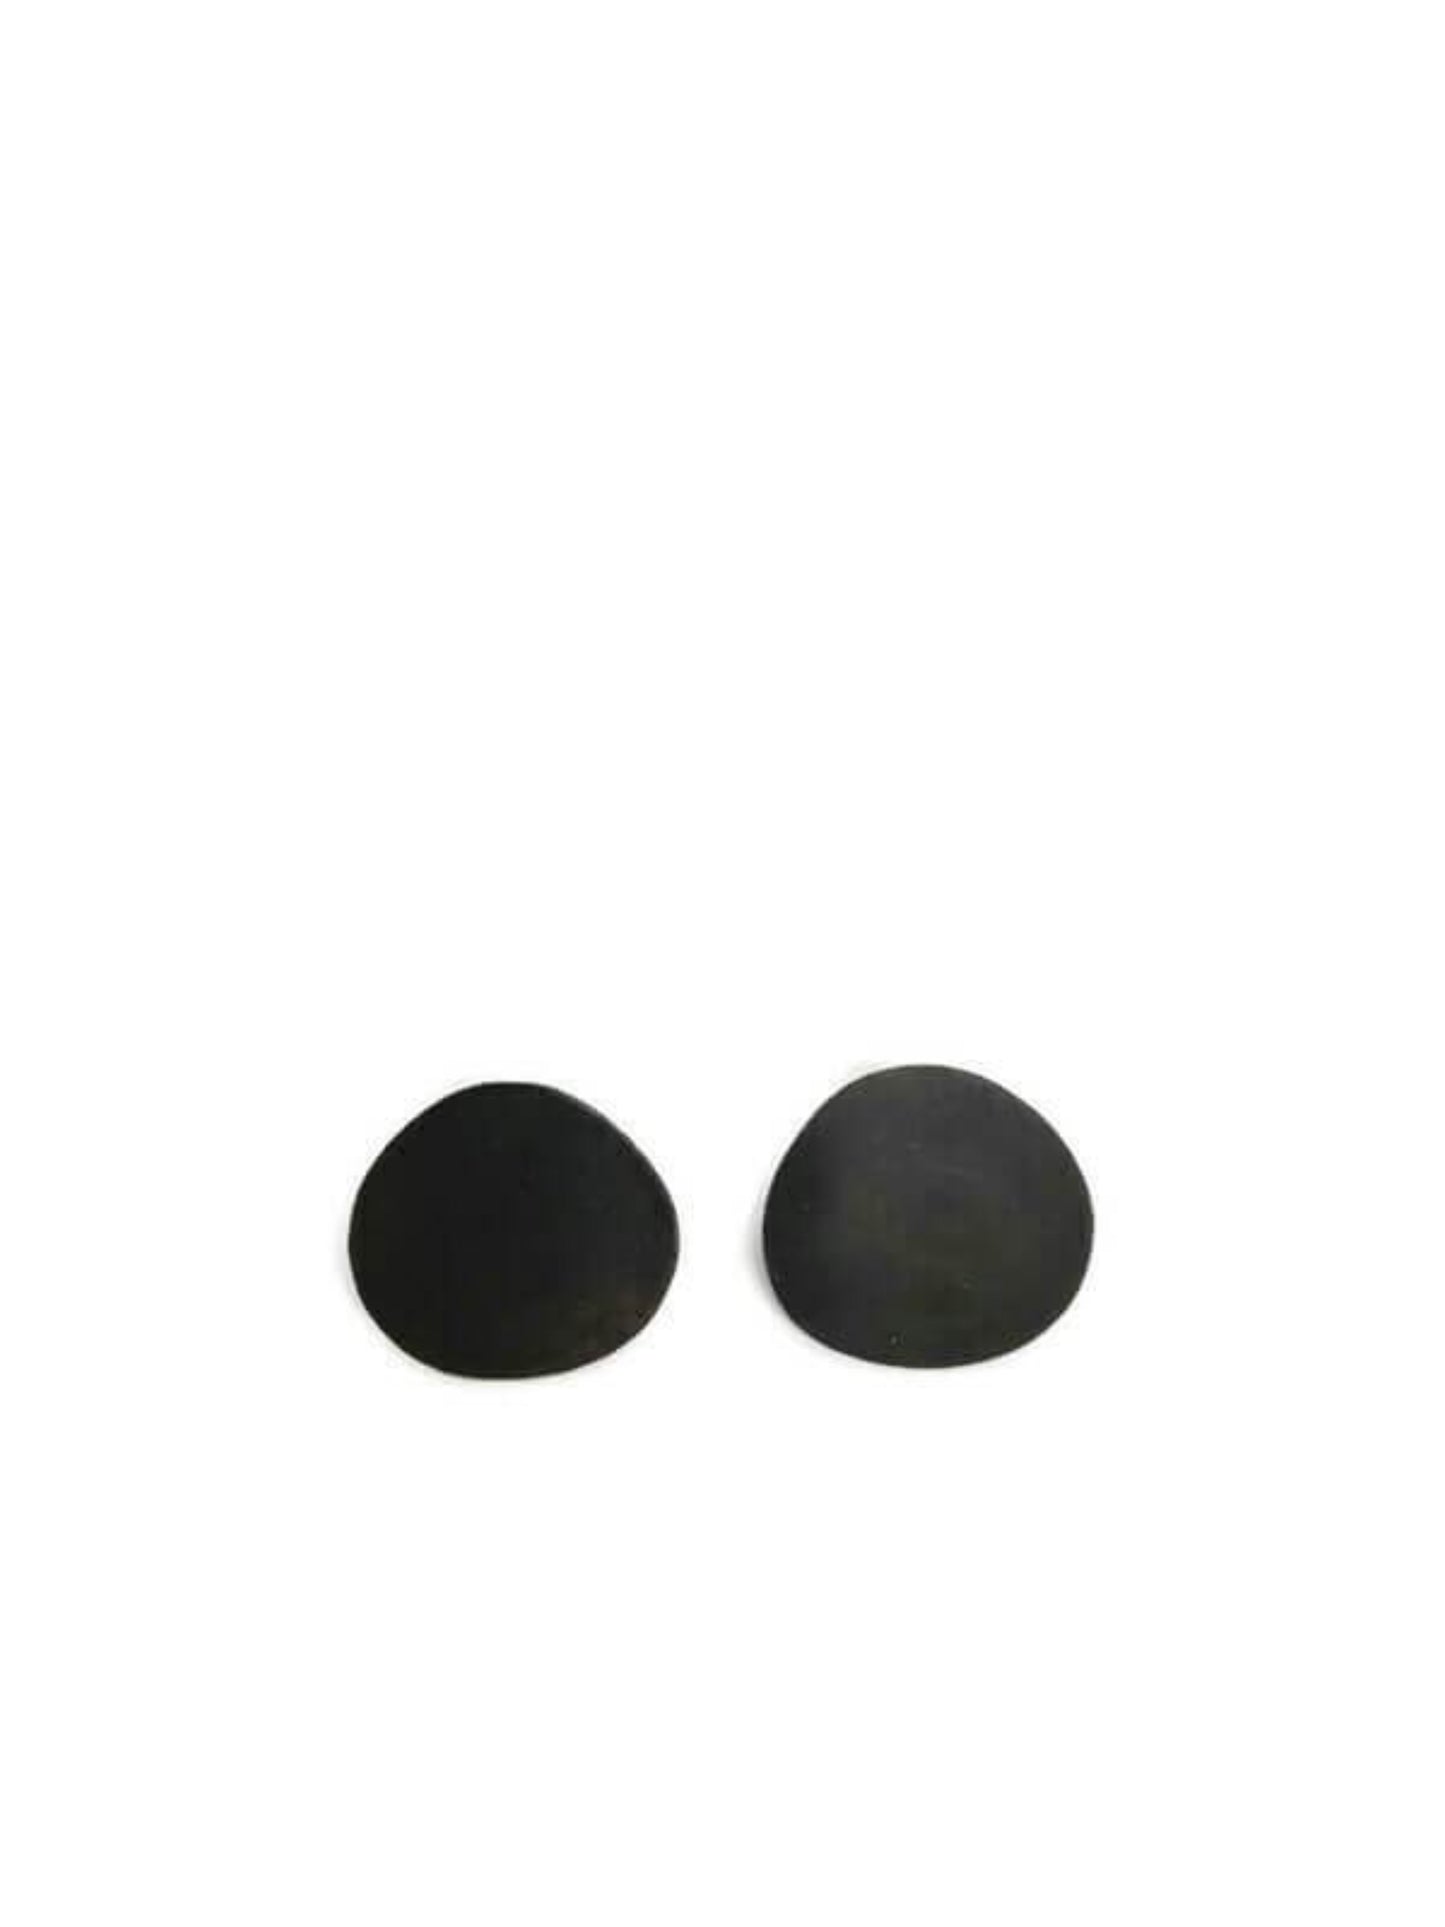 Oxidised brass earrings | Black Dots Earrings - CURIUDO